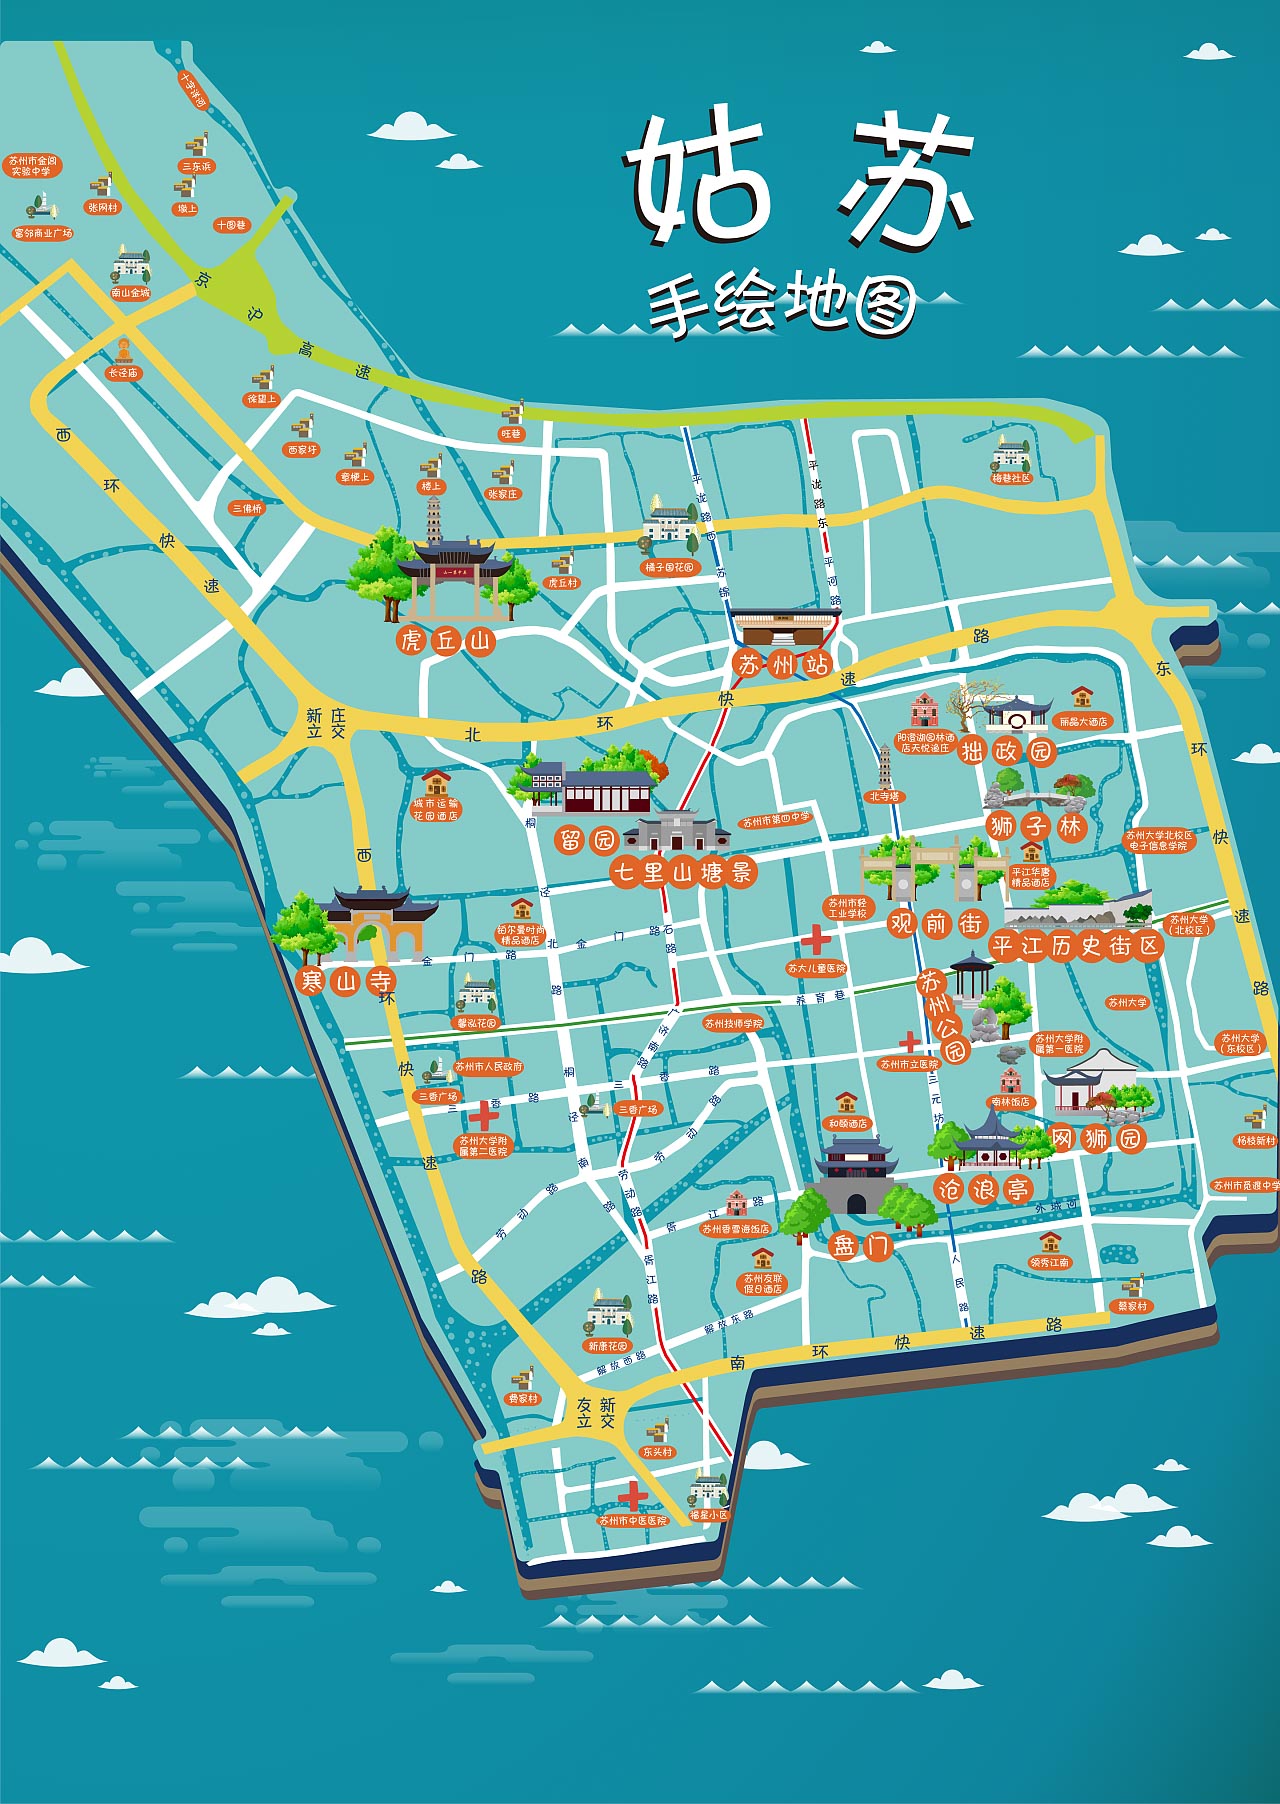 湾岭镇手绘地图景区的文化宝藏